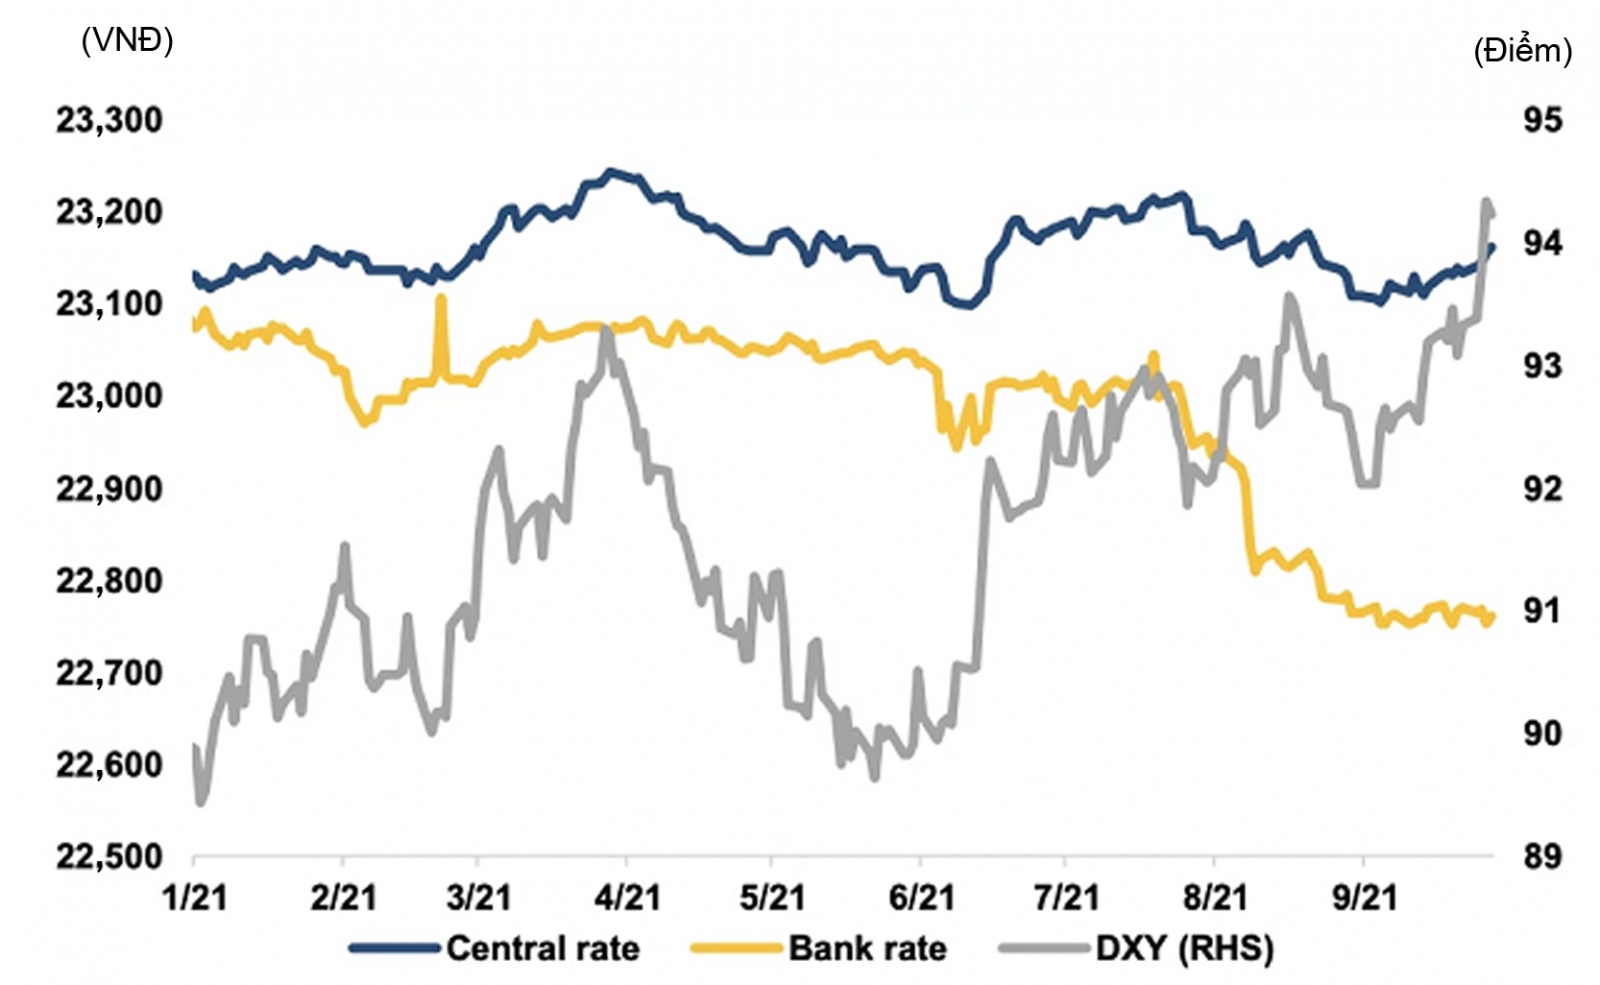  Tỷ giá USD/VND khá ổn định trong 9 tháng đầu năm nay.